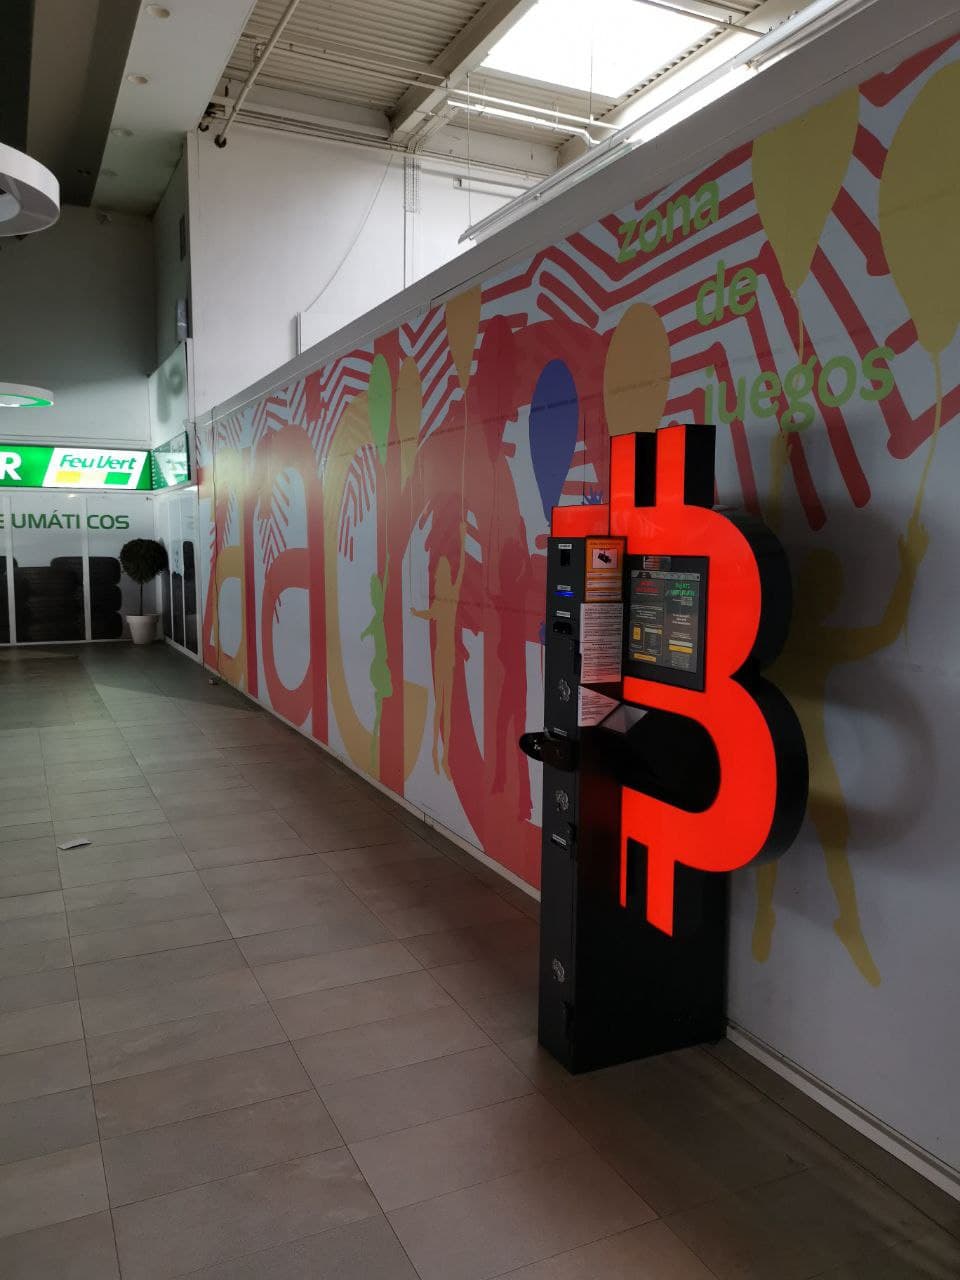 Cajero automático de Bitcoin en el centro comercial Carrefour Zaraiche, foto número 4